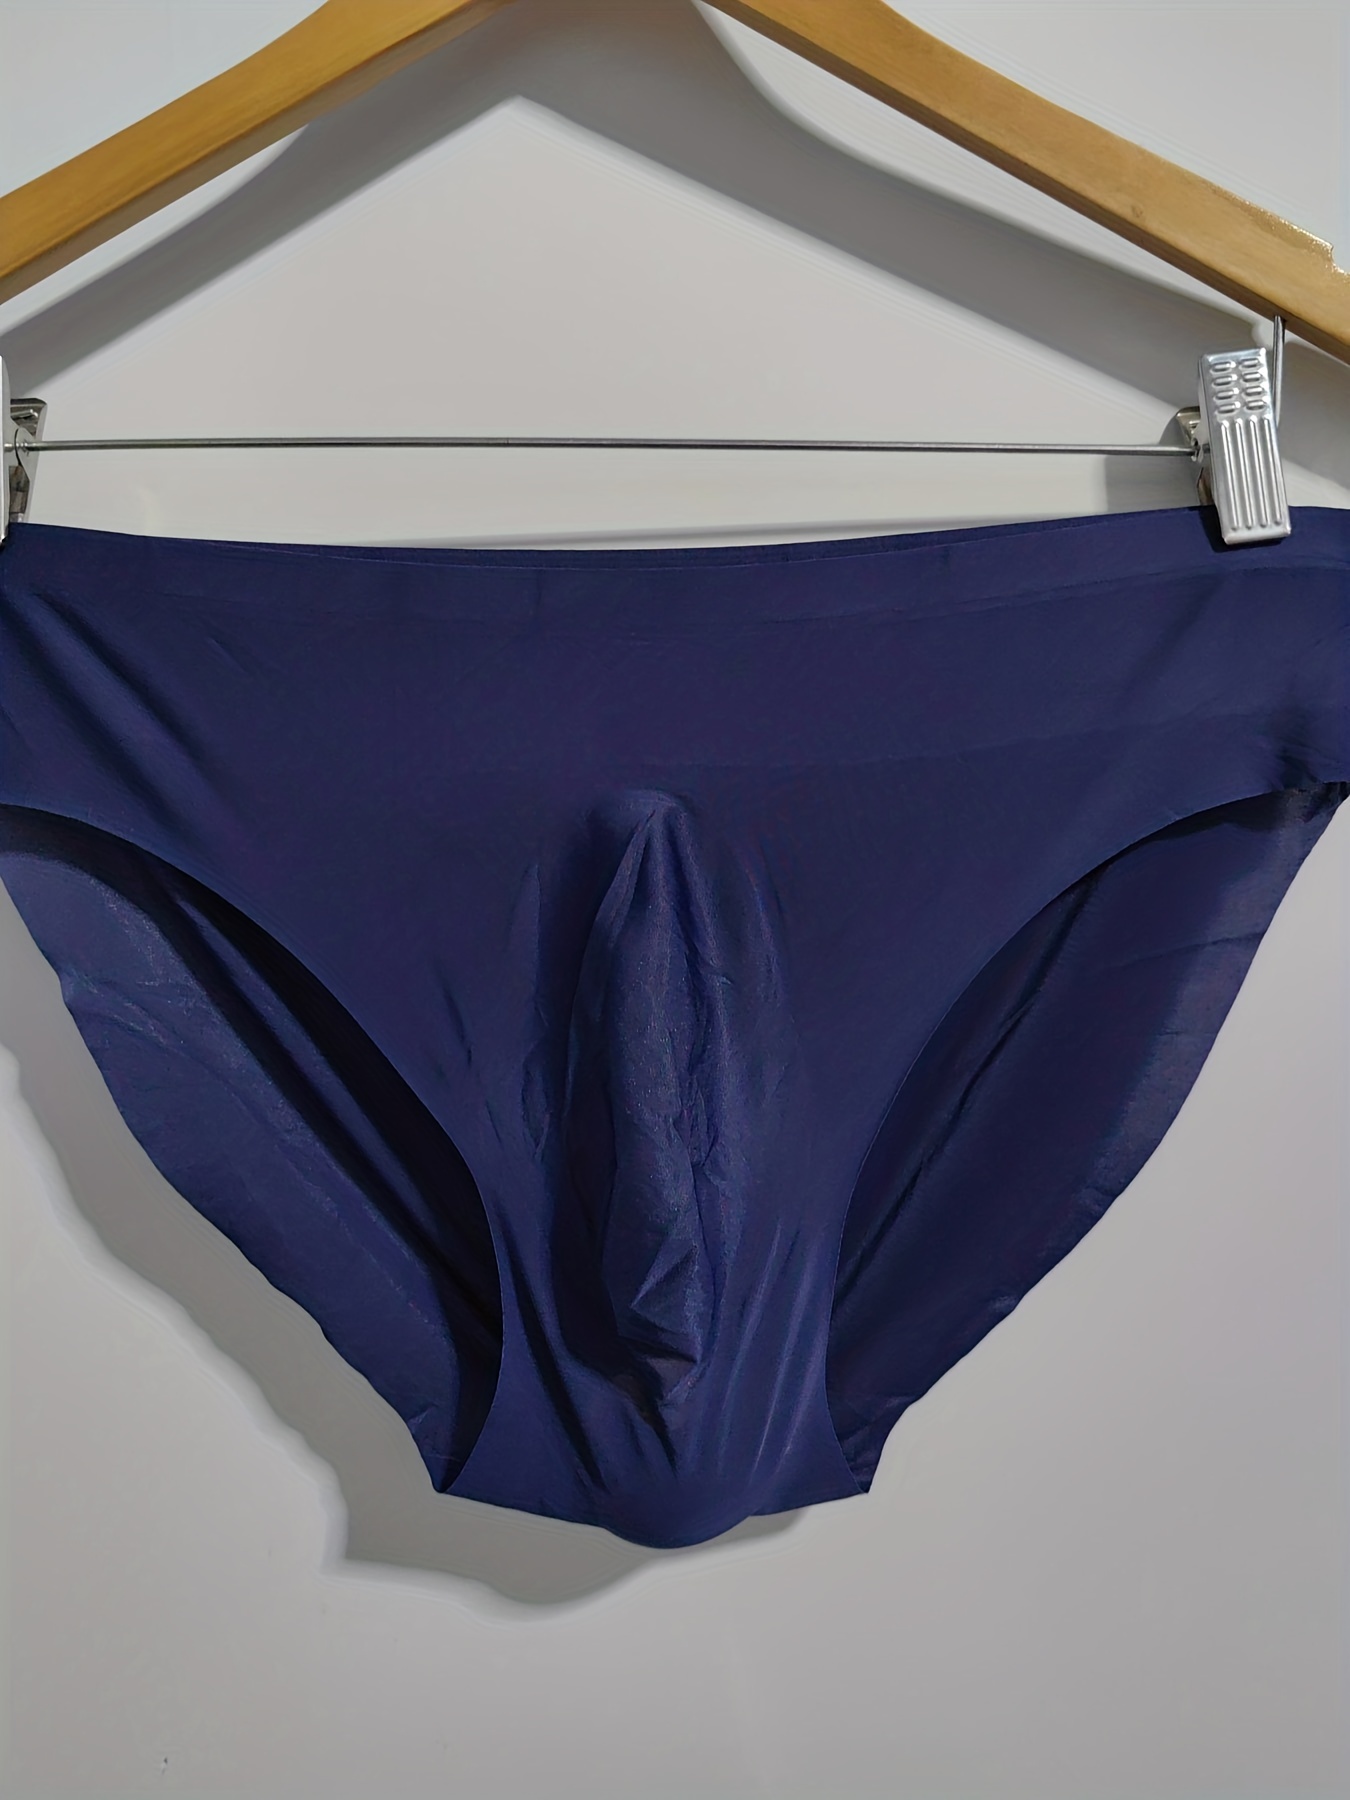 New ultra-thin ice silk women underwear Seamless mid waist